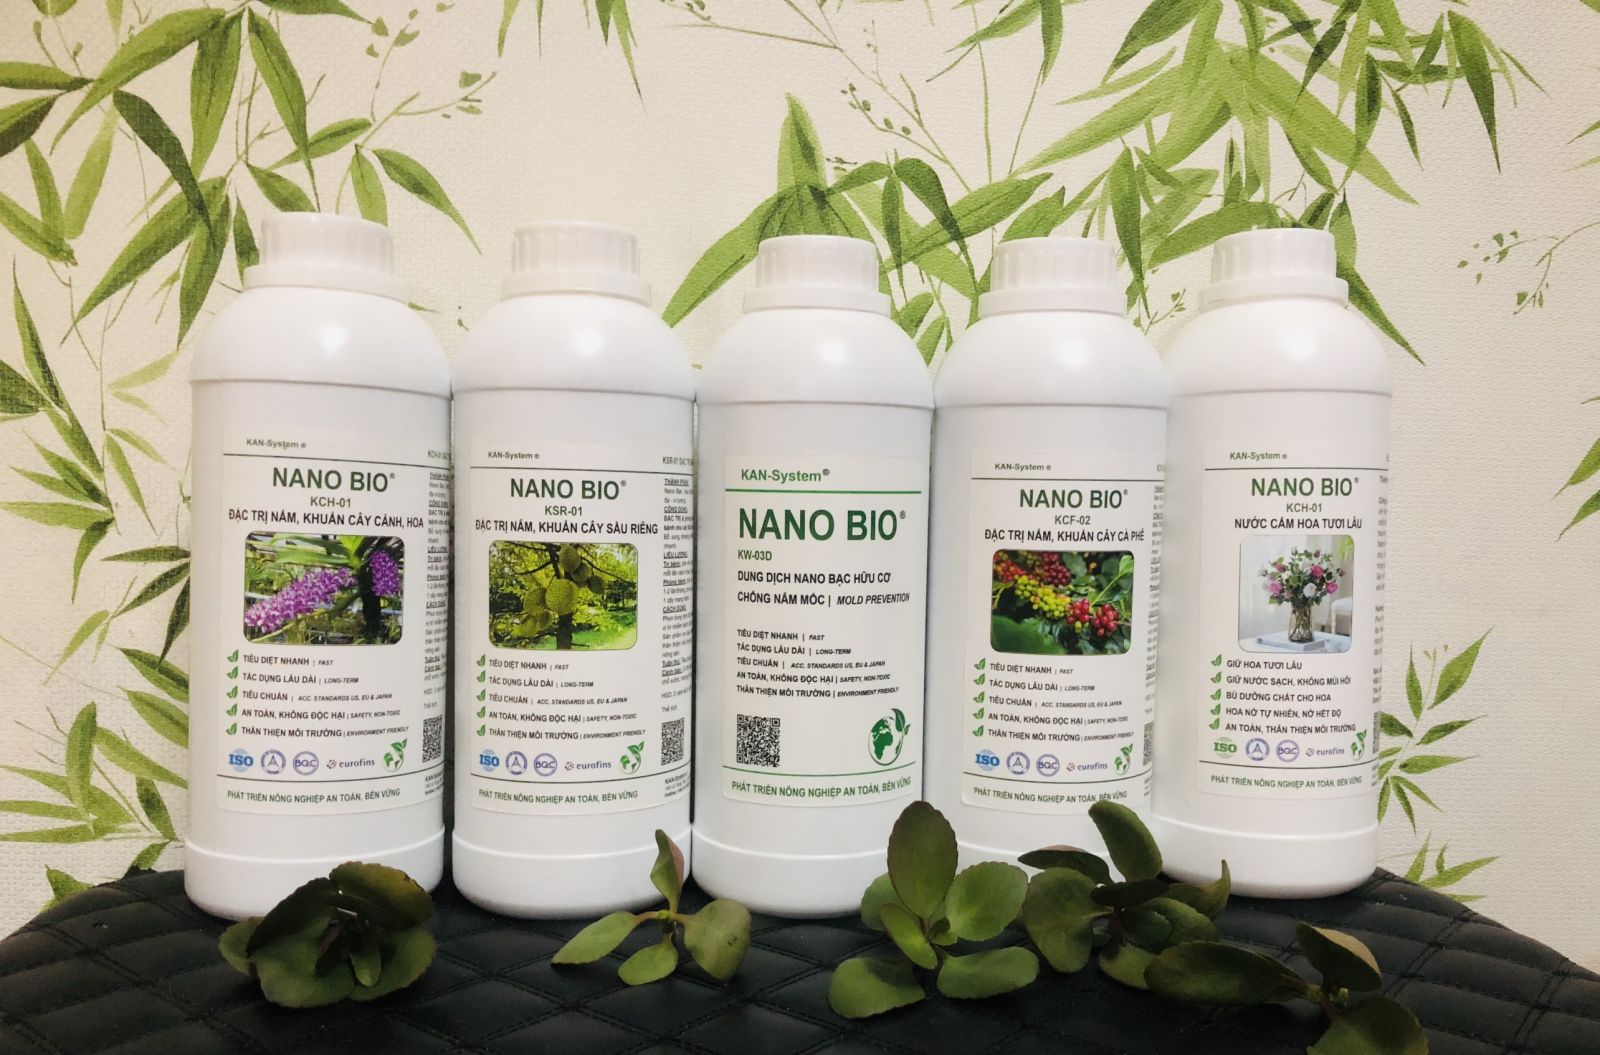 NANO BIO: ĐẶC TRỊ & phòng chống bệnh do nấm, vi khuẩn gây bệnh cho cây Điều